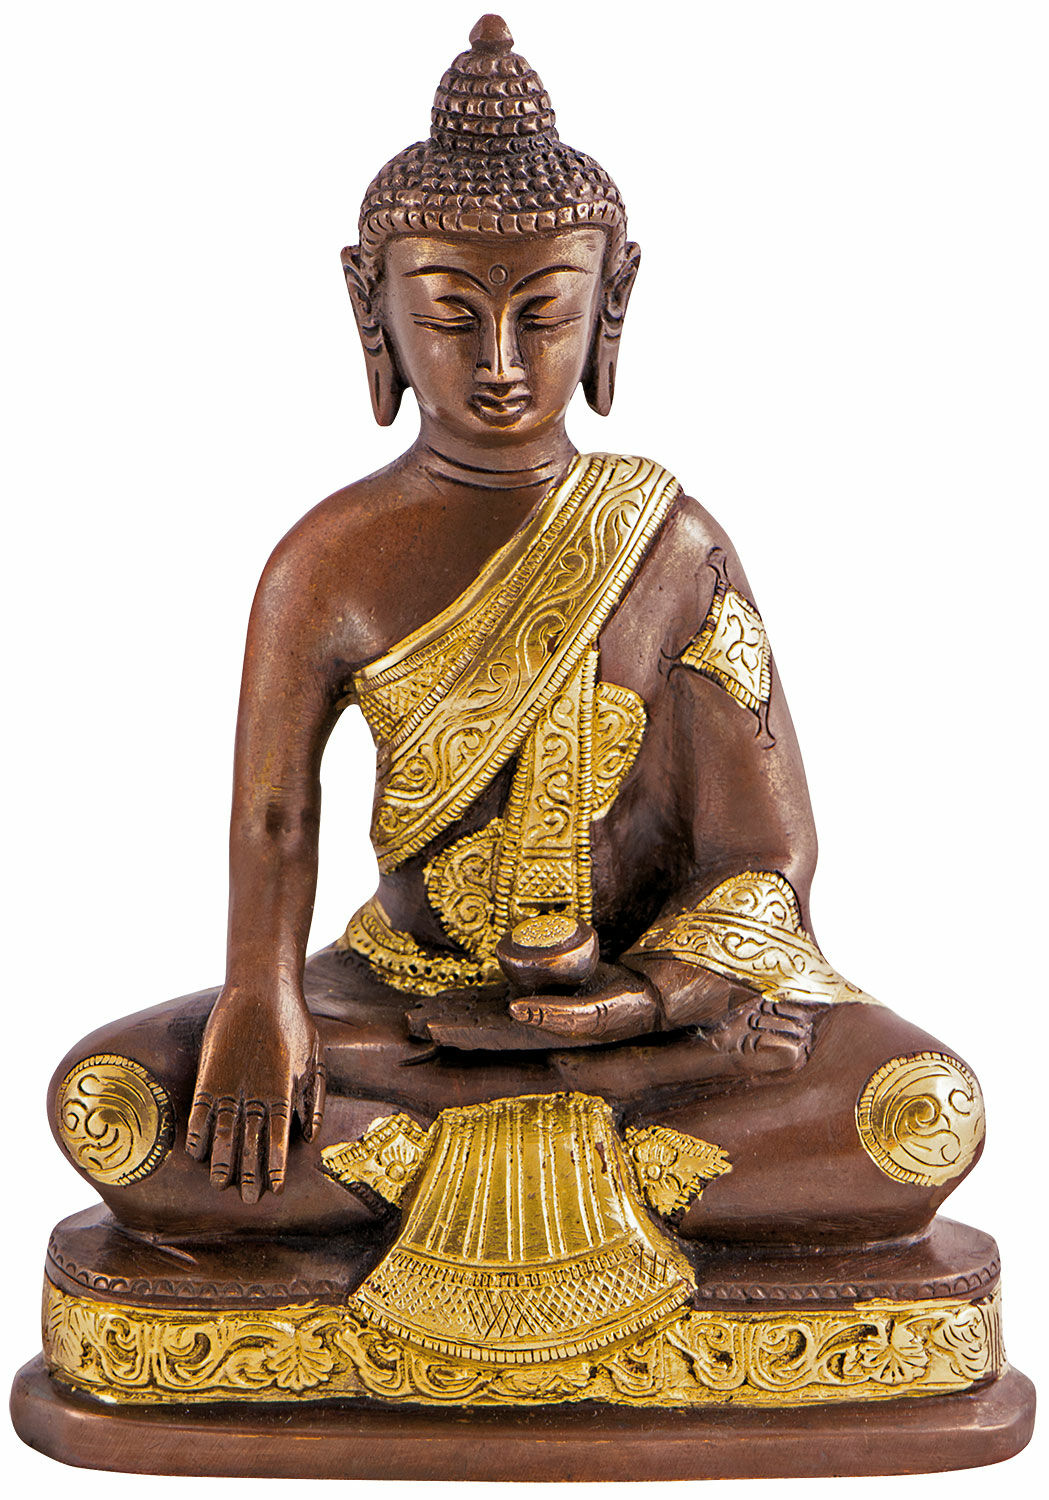 Brass sculpture "Buddha Shakyamuni"